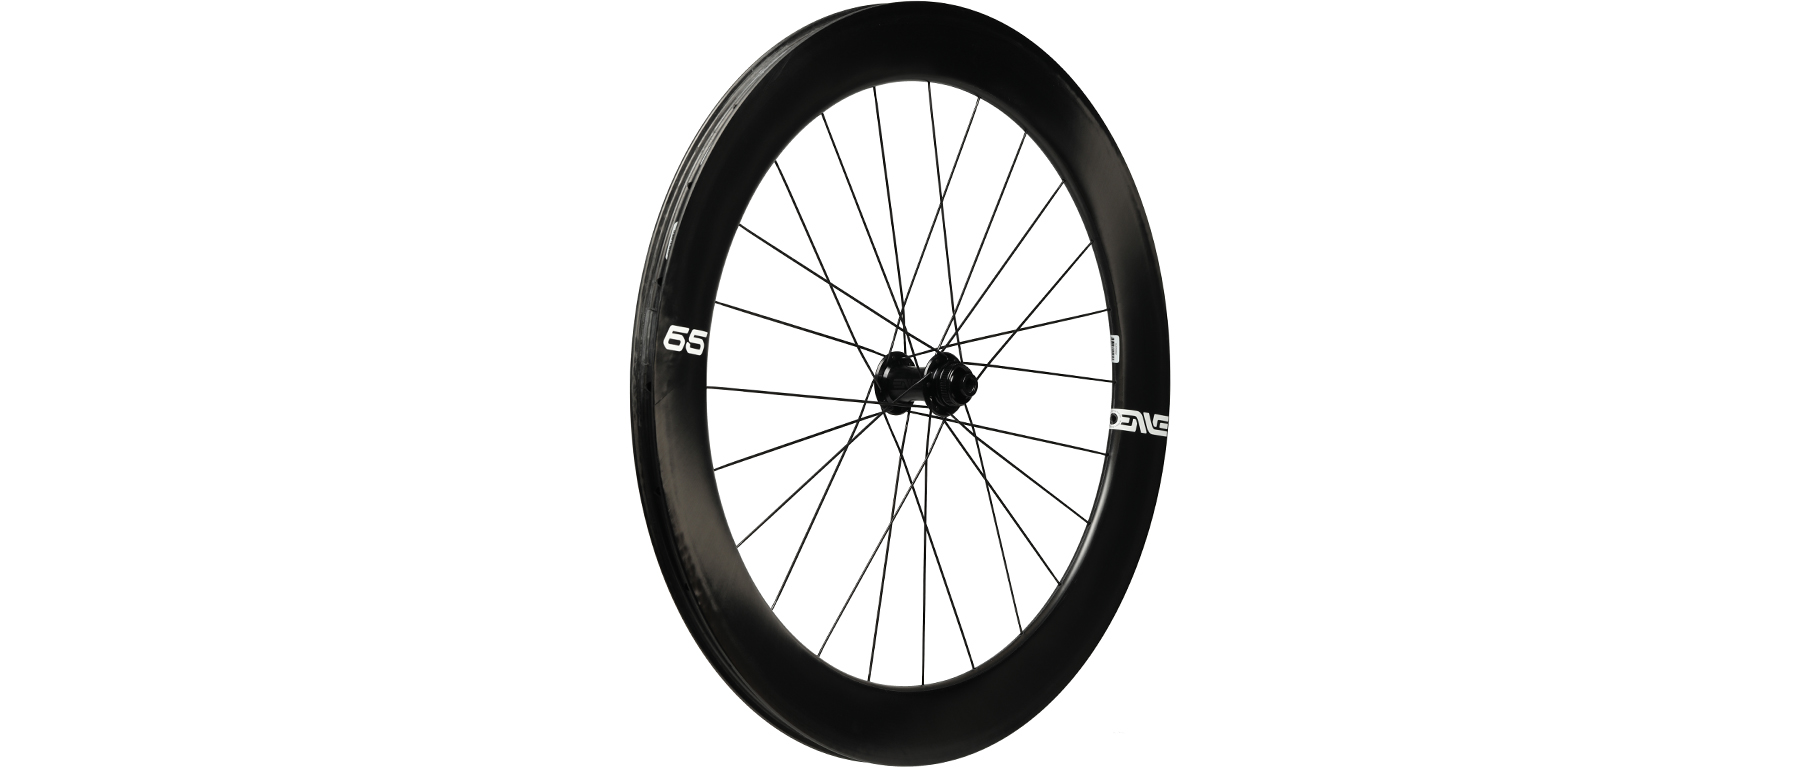 ENVE 65 Carbon Disc Wheelset